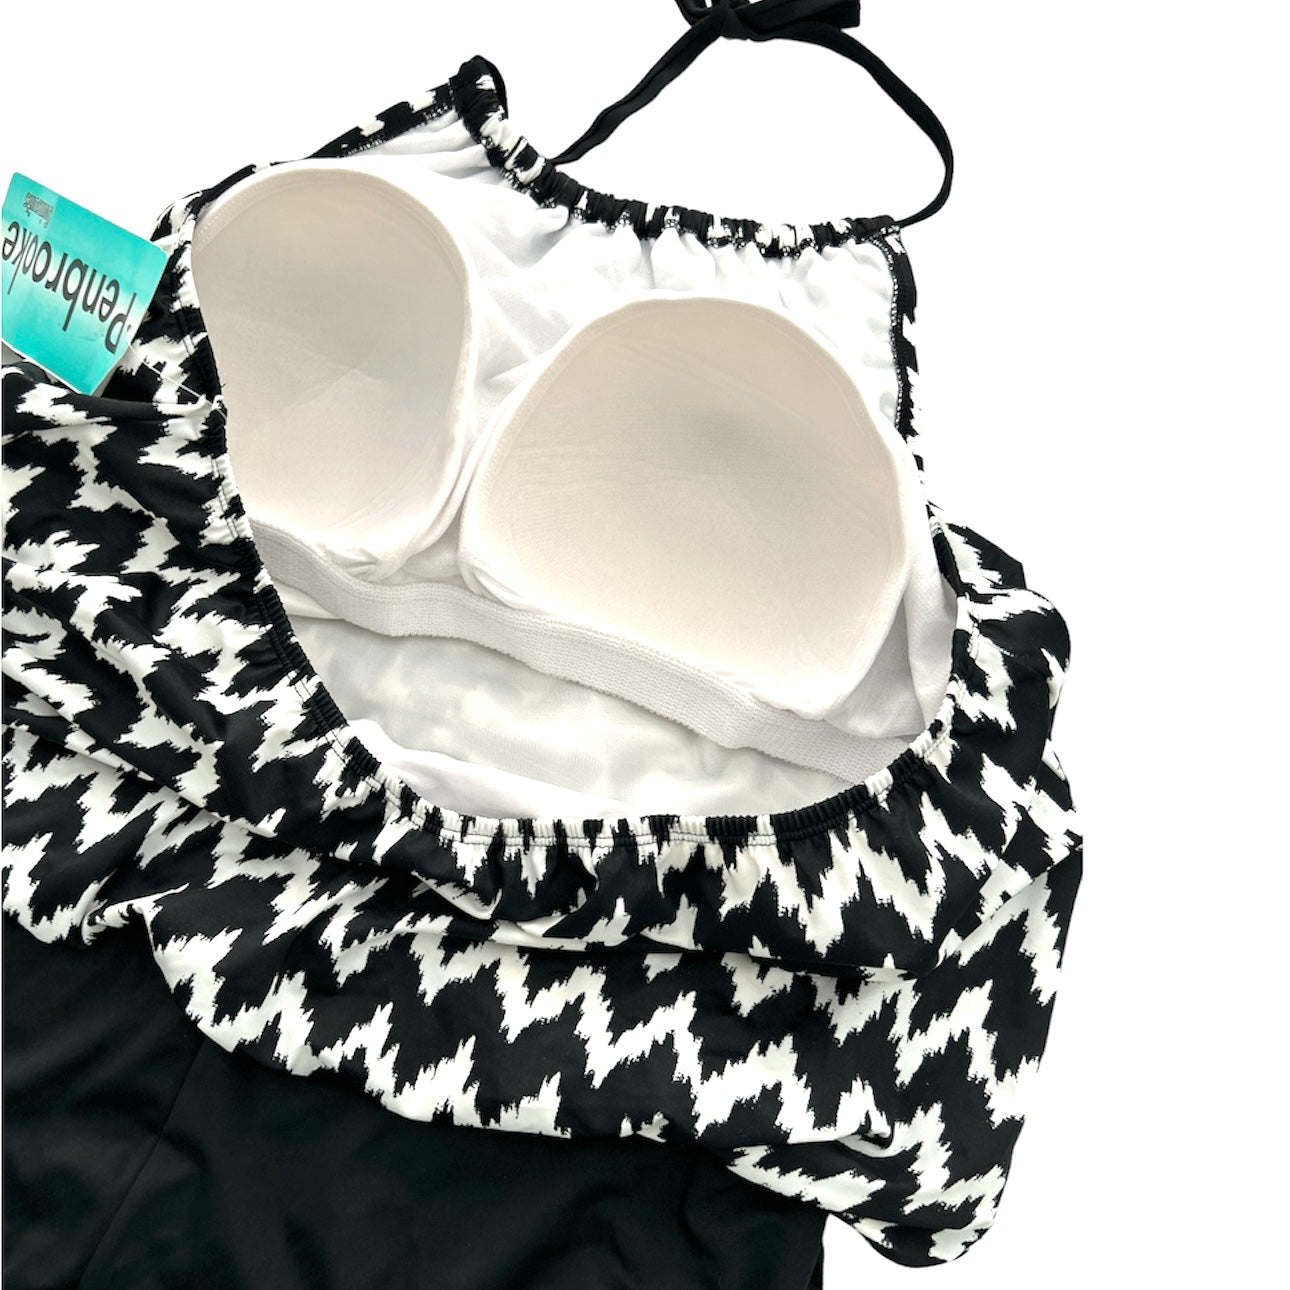 Black/White High Neck One Piece Plus Size 1X(16W) Swimsuit Women's Swimwear